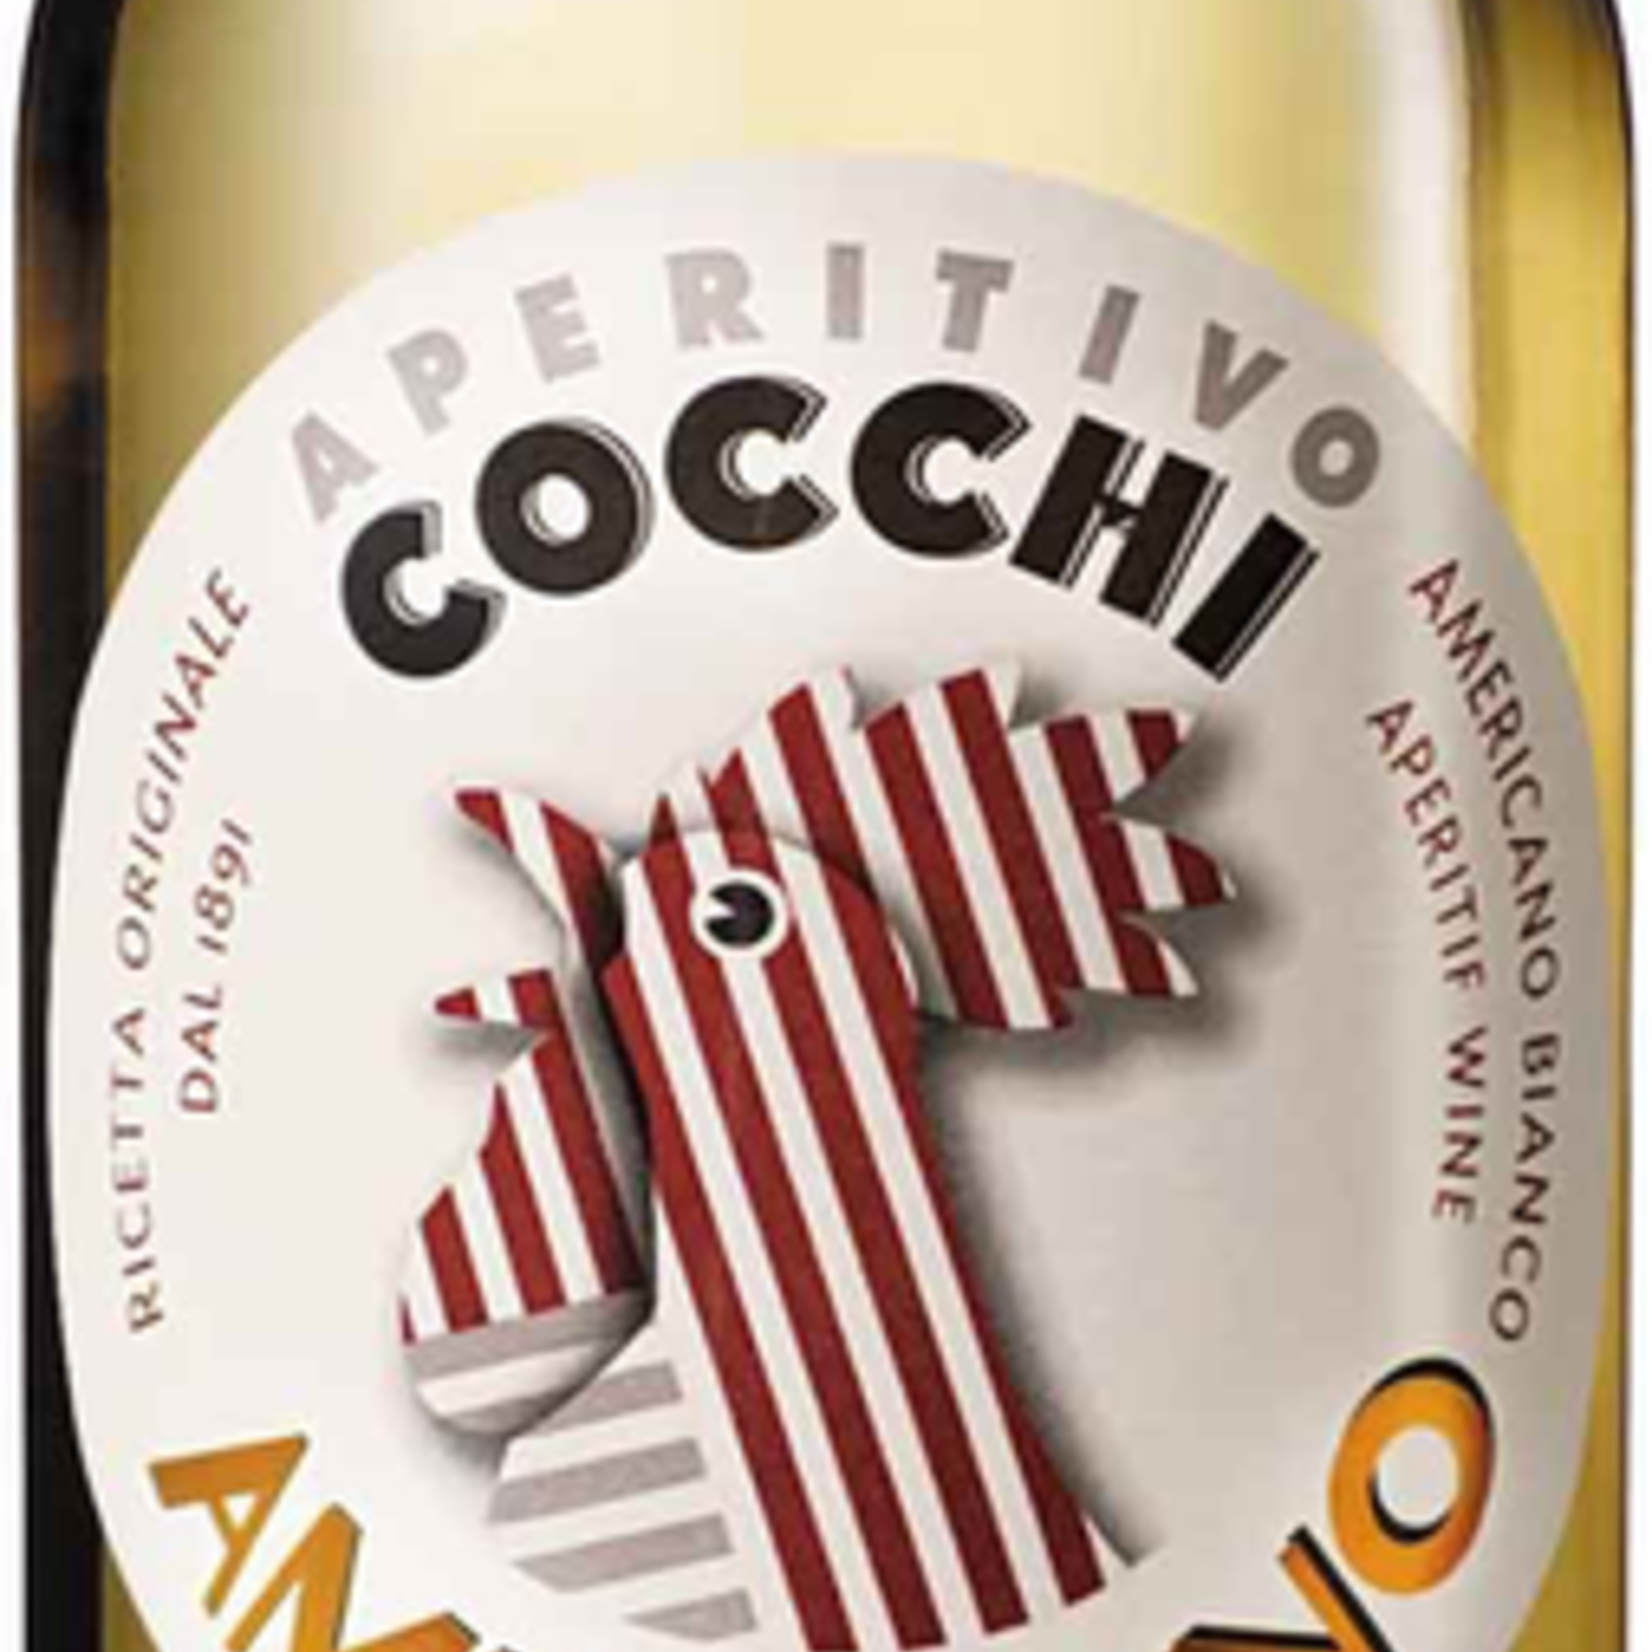 Italy Cocchi Americano